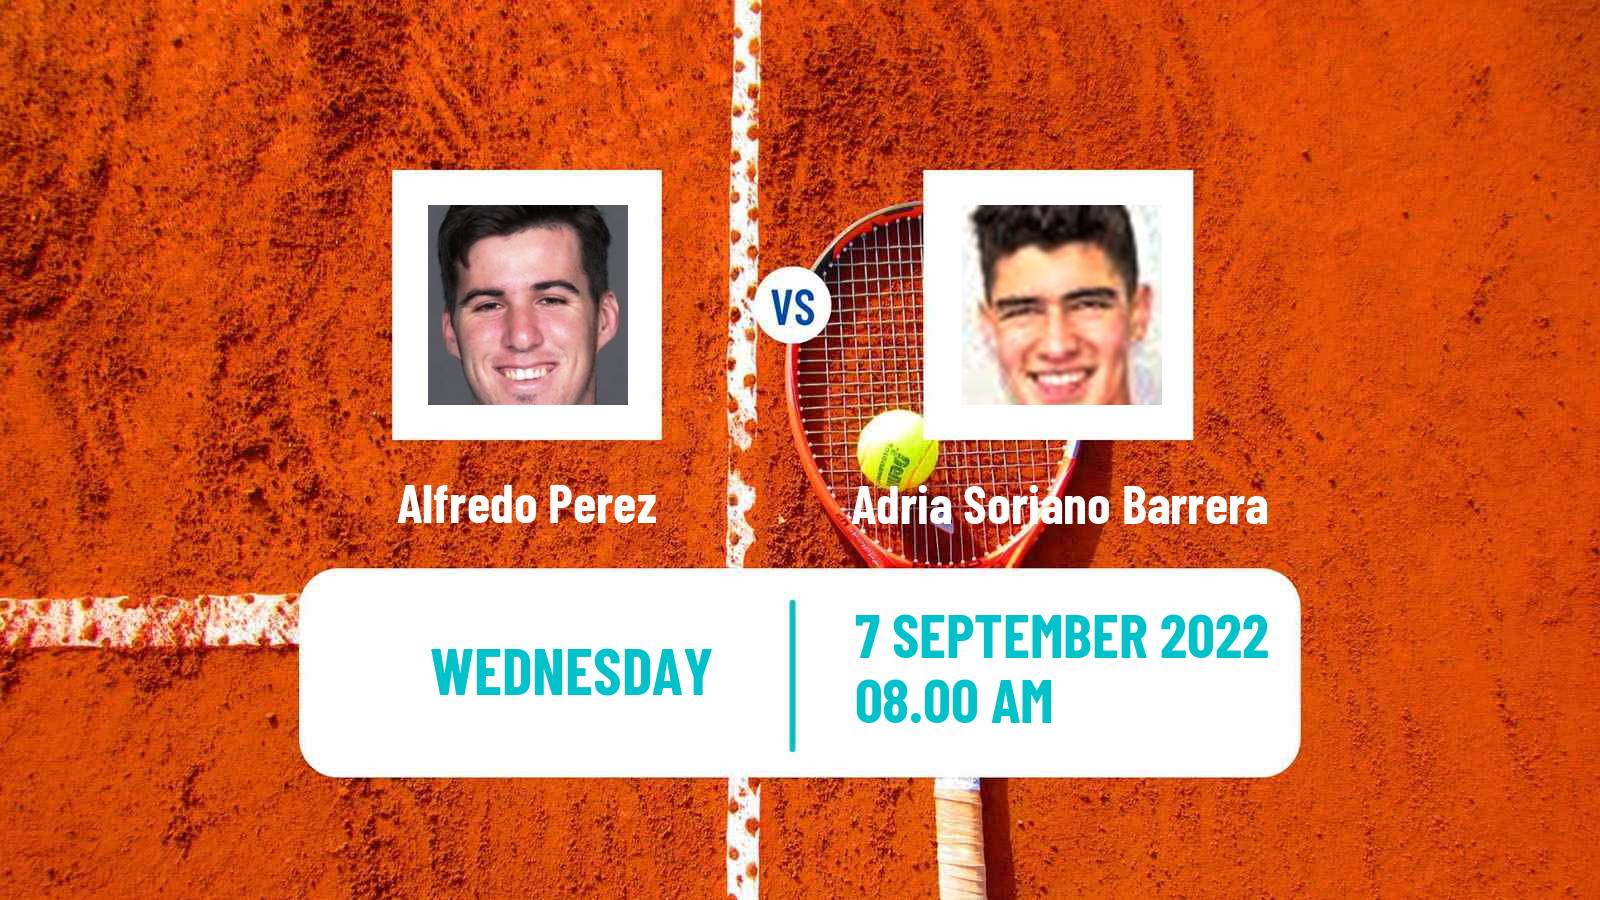 Tennis ITF Tournaments Alfredo Perez - Adria Soriano Barrera